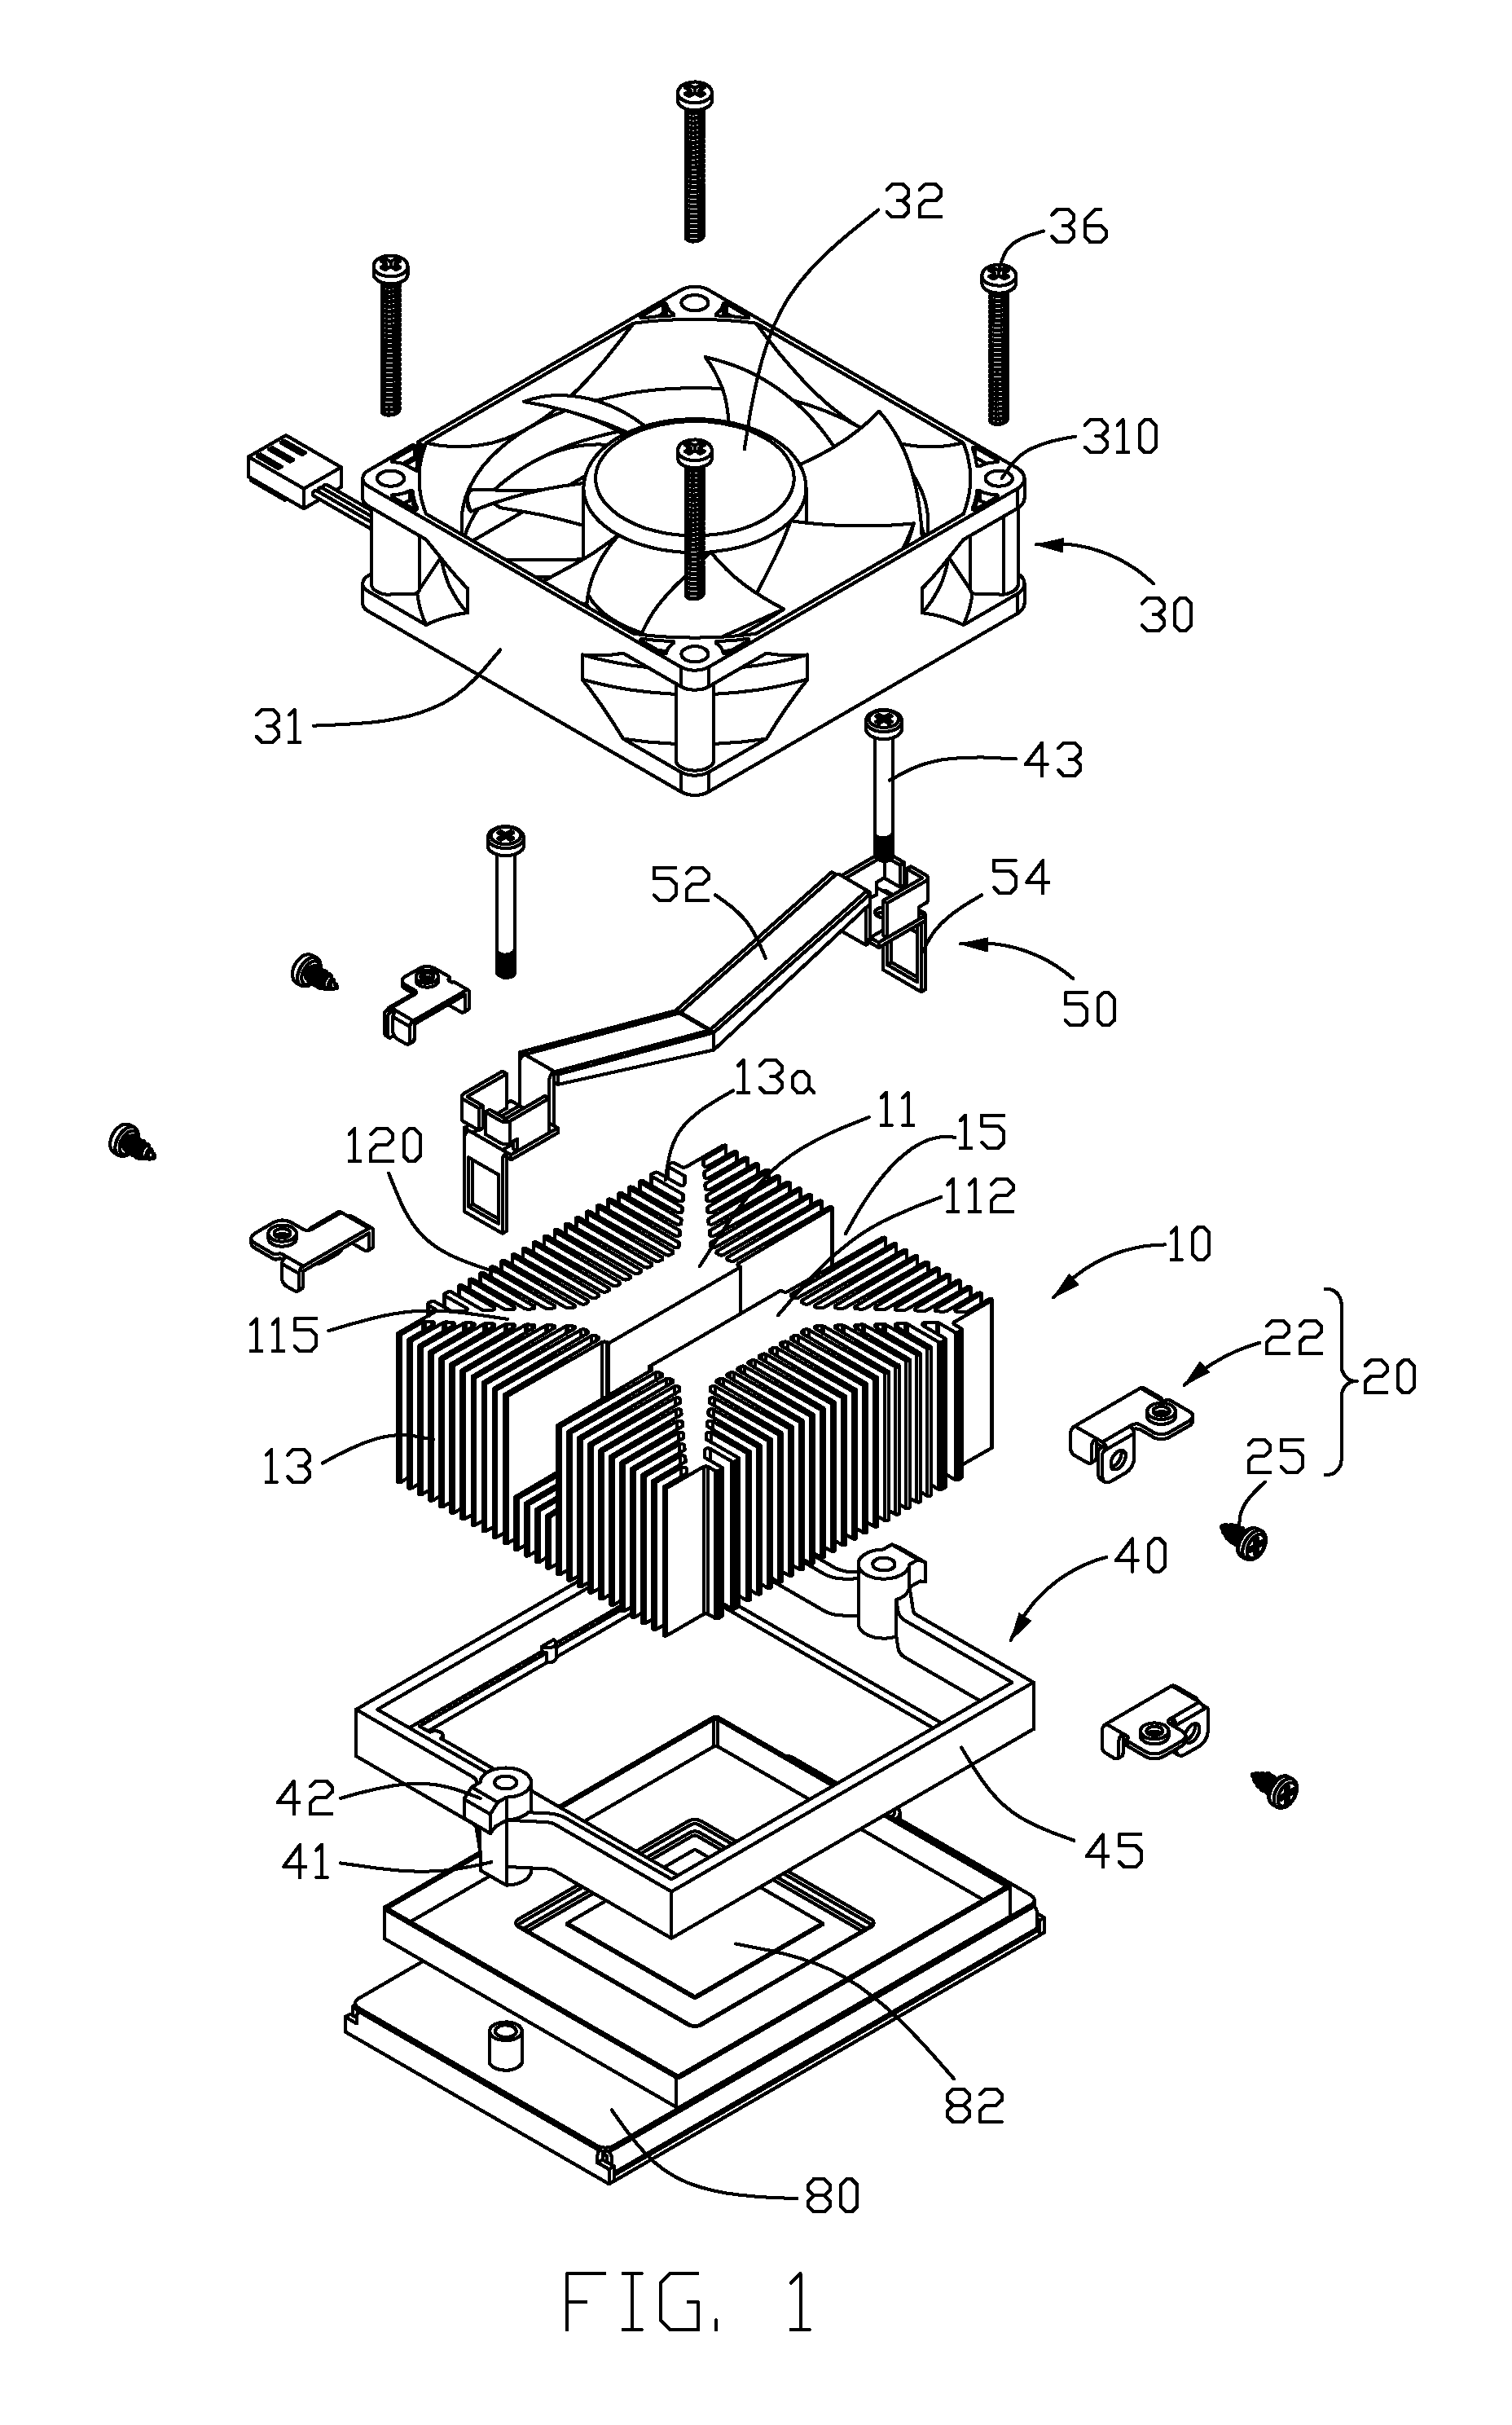 Heat sink assembly having a fan mounting device